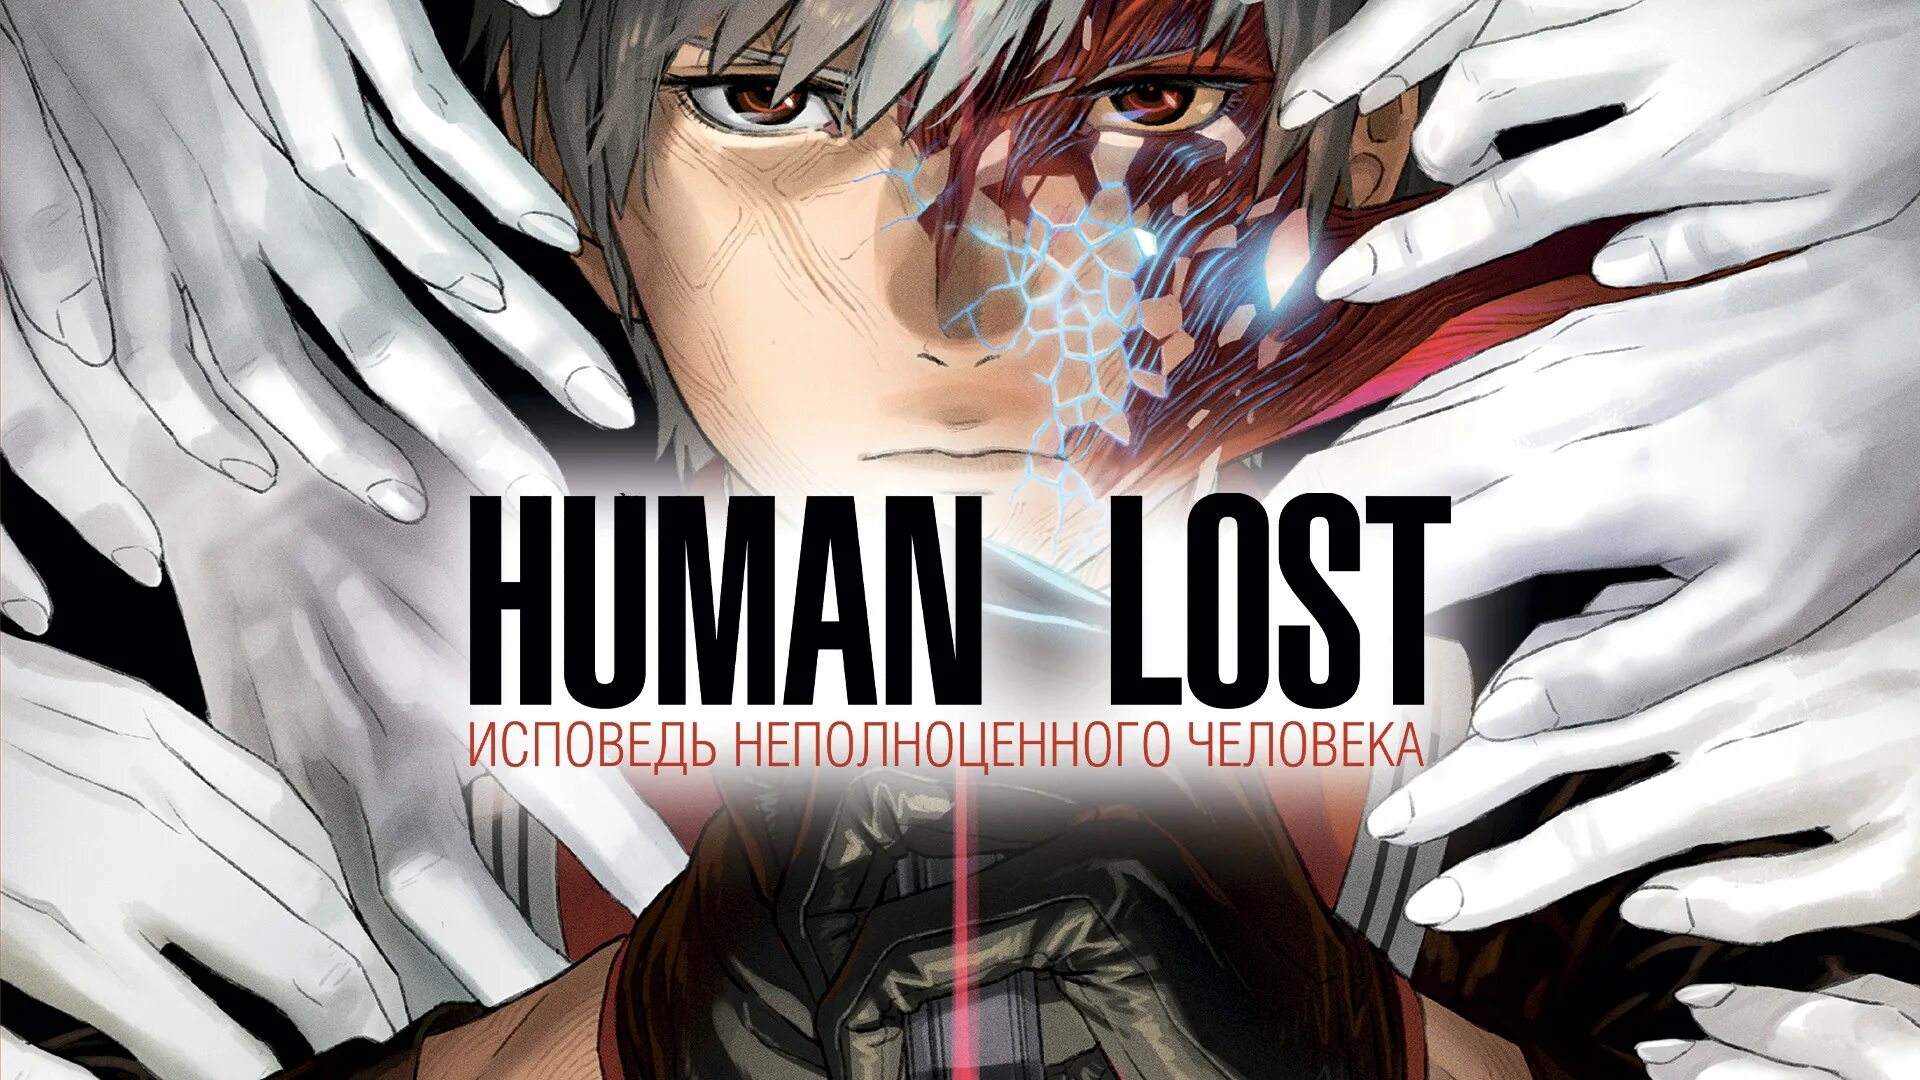 Human Lost: Исповедь неполноценного человека (2019). Хуман лост Исповедь неполноценного человека. Исповедь неполноценного человека отзывы